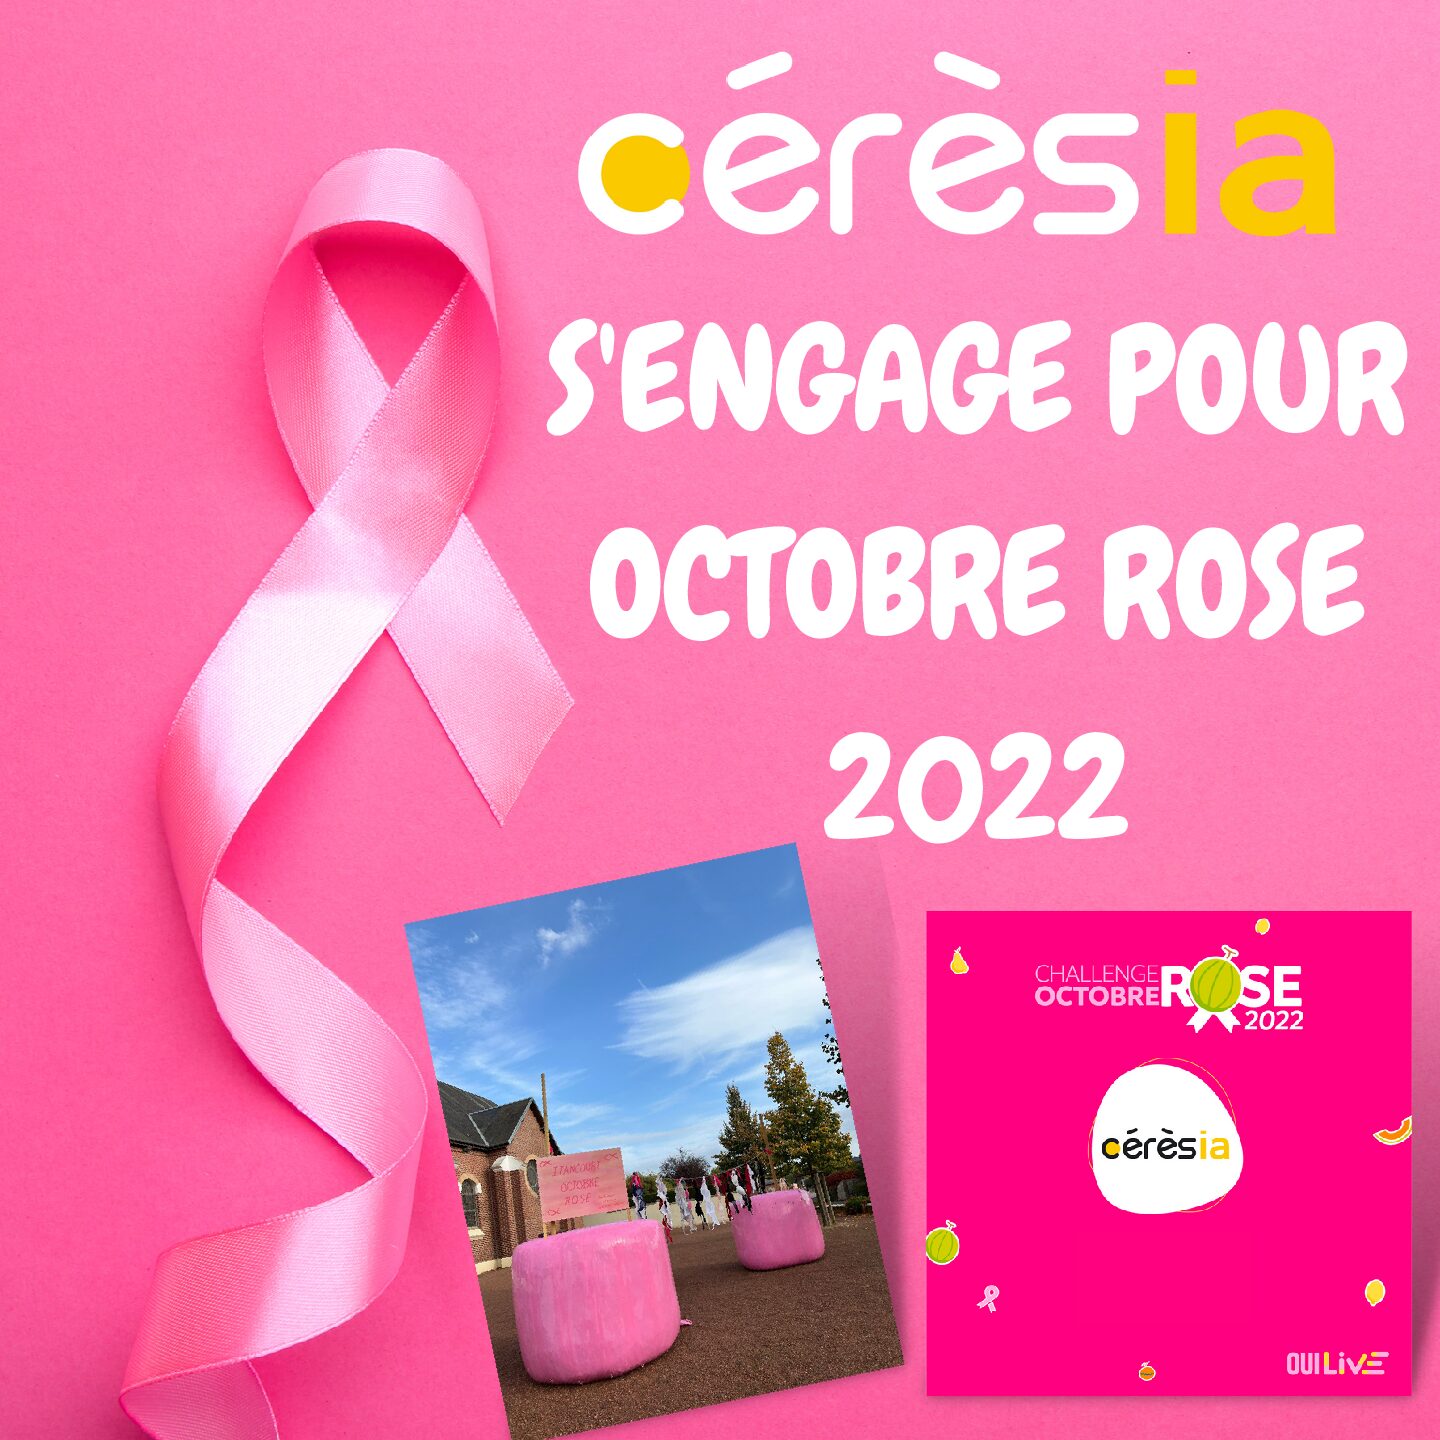 Le groupe Cérèsia s’engage pour Octobre Rose 2022